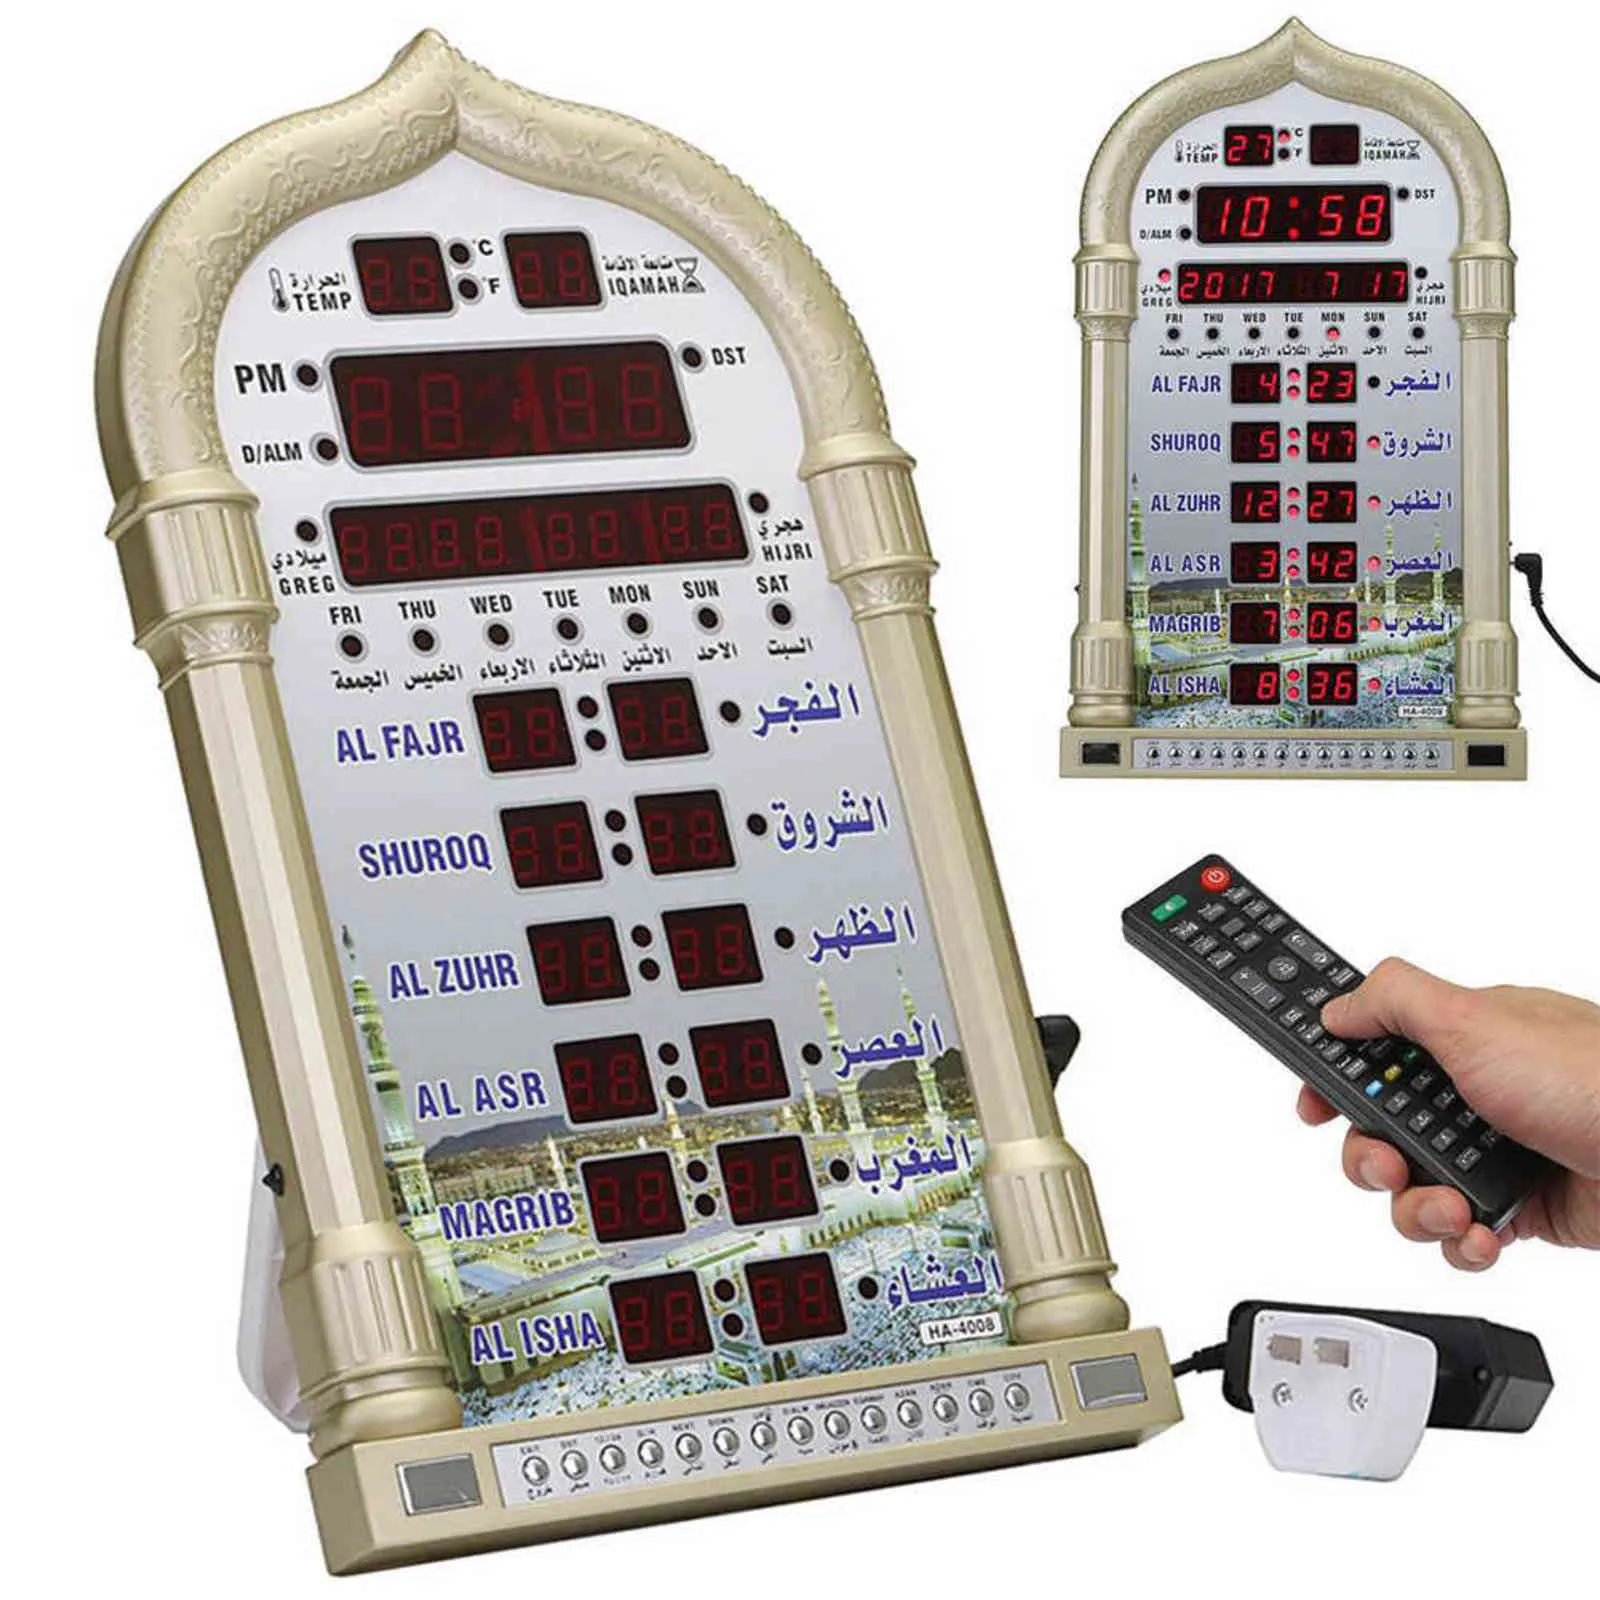 デジタルアザンモスクの祈りの時計イスラムモスクアザンカレンダーイスラム教徒の祈りの壁時計アラームラマダンリモートコントロールサポートCSV H16606612